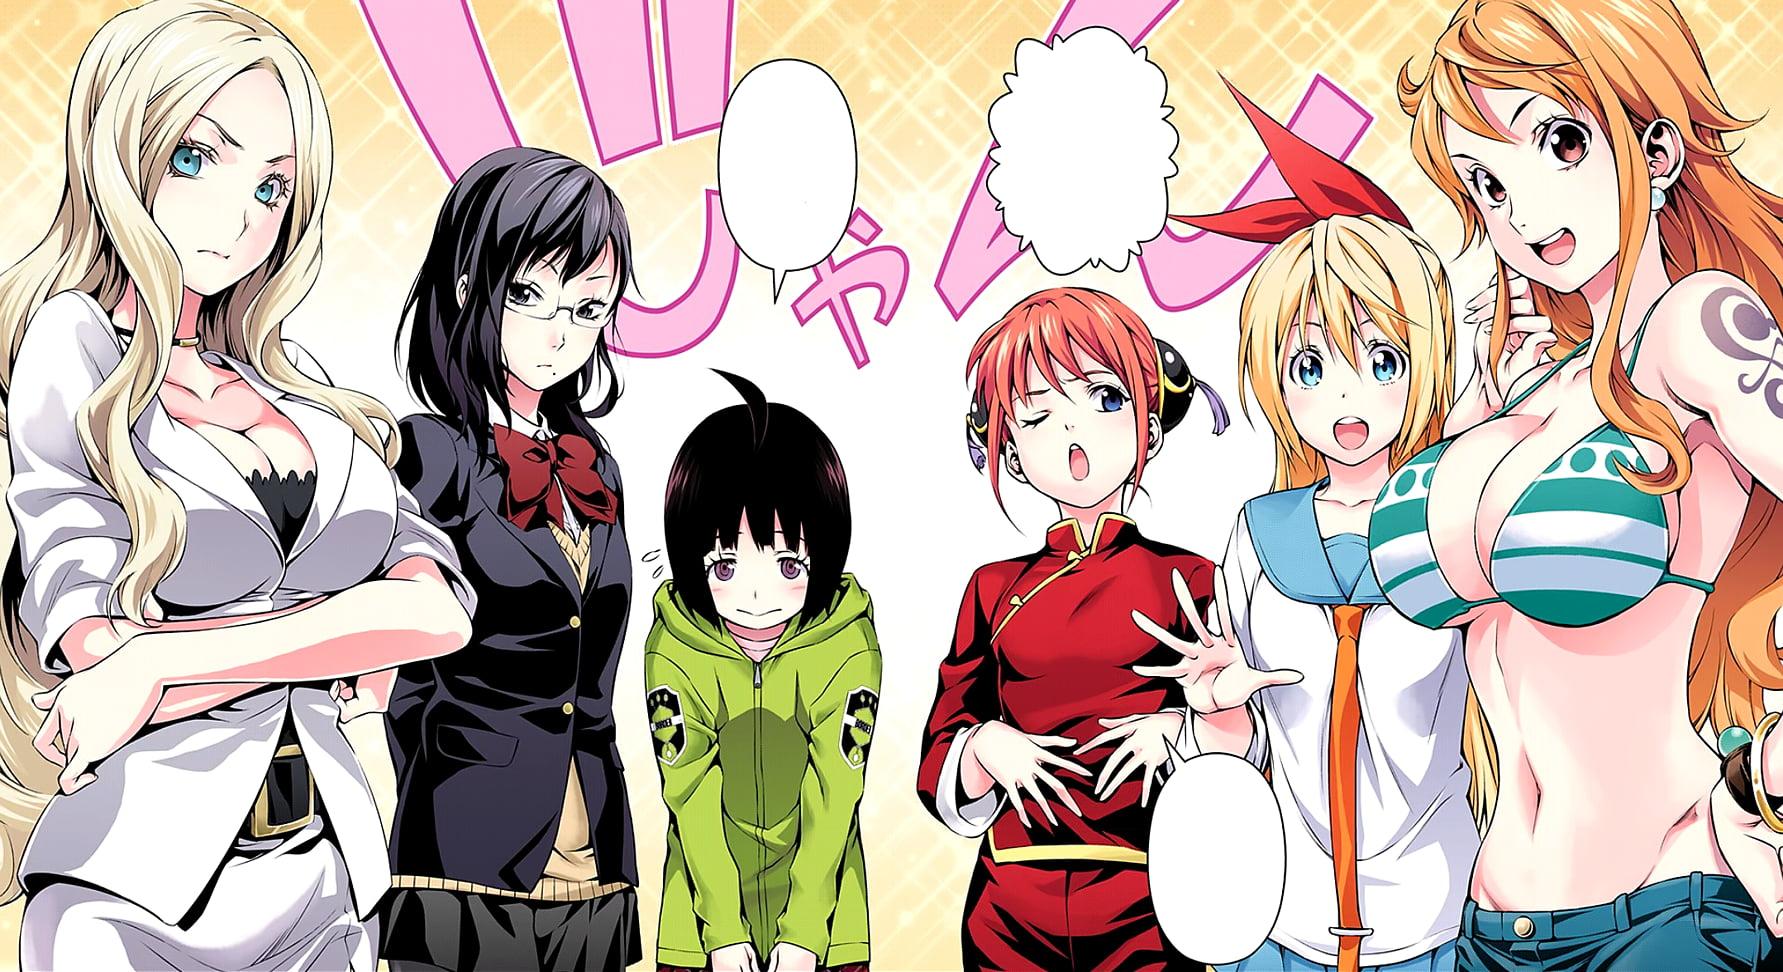 Female anime character illustration, anime, Shonen Jump